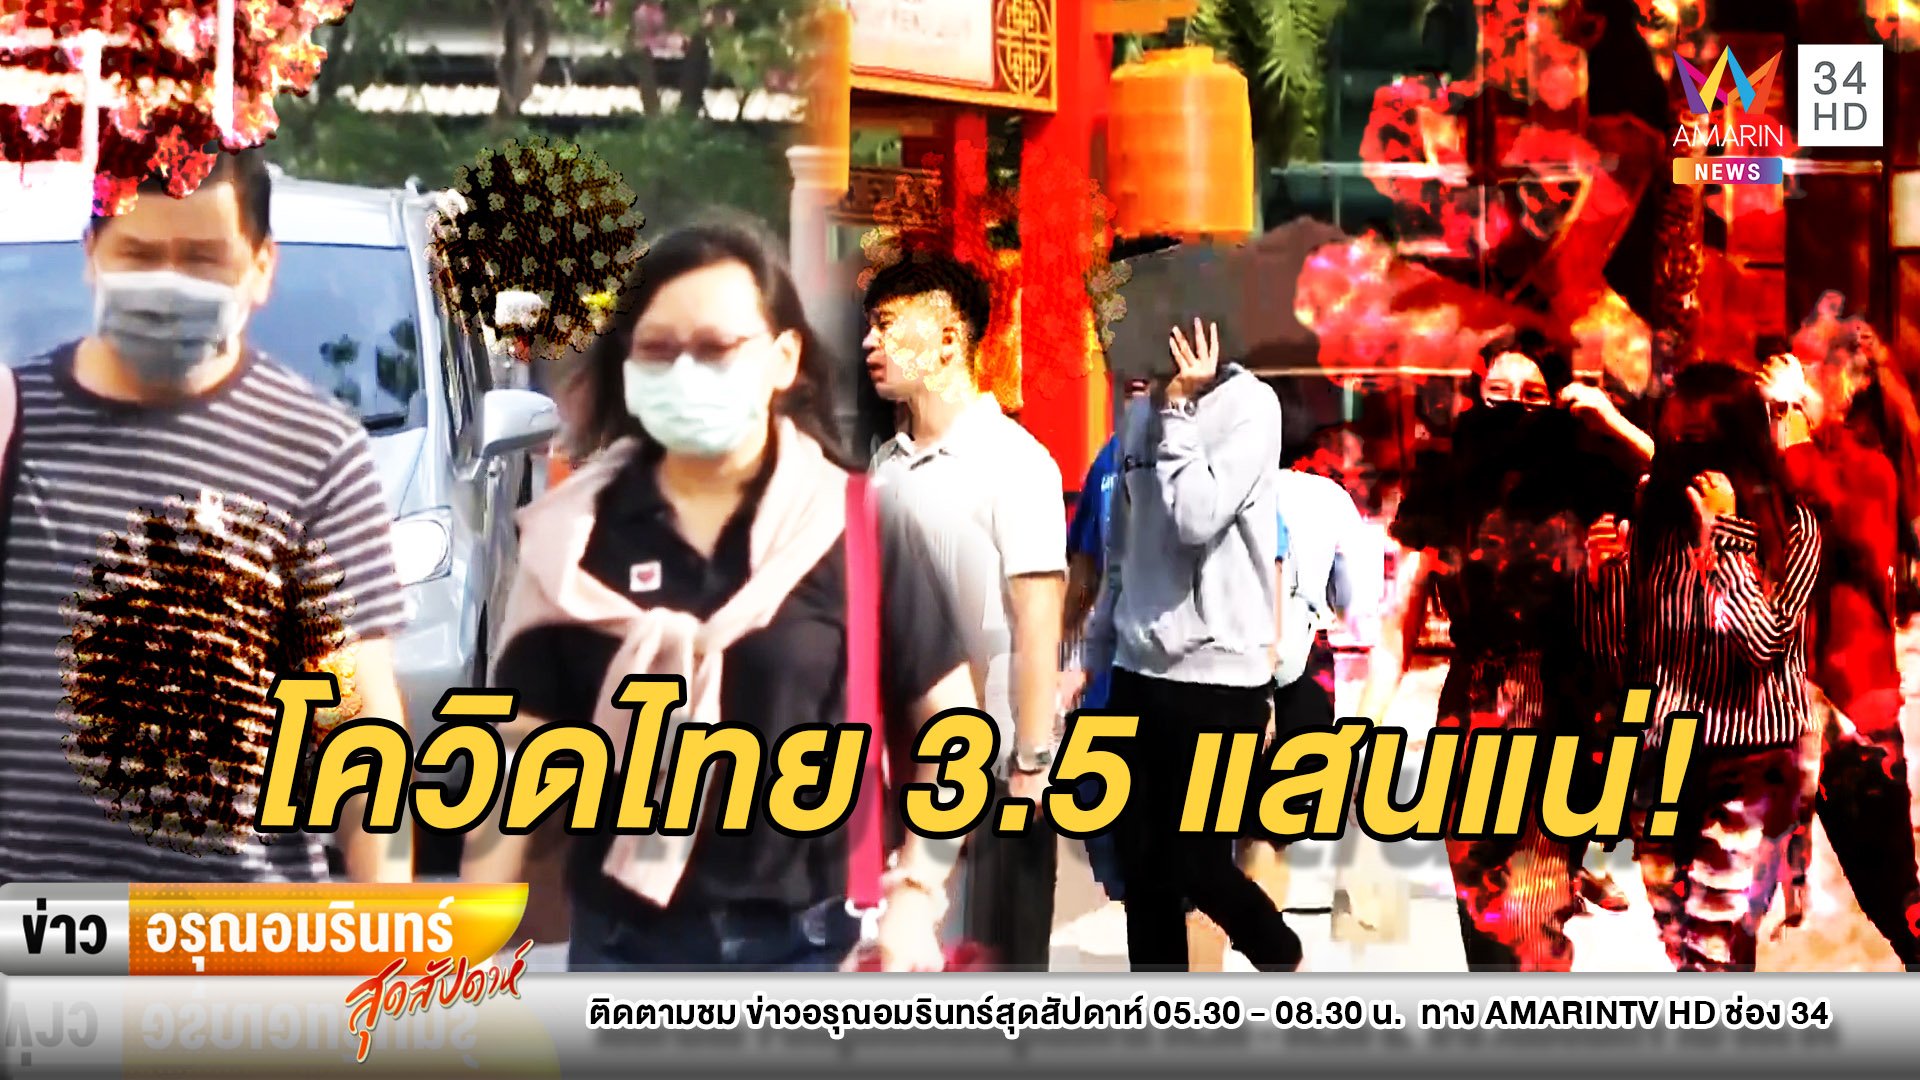 น่ากลัว! สื่อดังคาดอีก 30 วัน ผู้ป่วยโควิด-19 ในไทยแตะ 3.5 แสนราย | ข่าวอรุณอมรินทร์ สุดสัปดาห์ | 21 มี.ค. 63 | AMARIN TVHD34